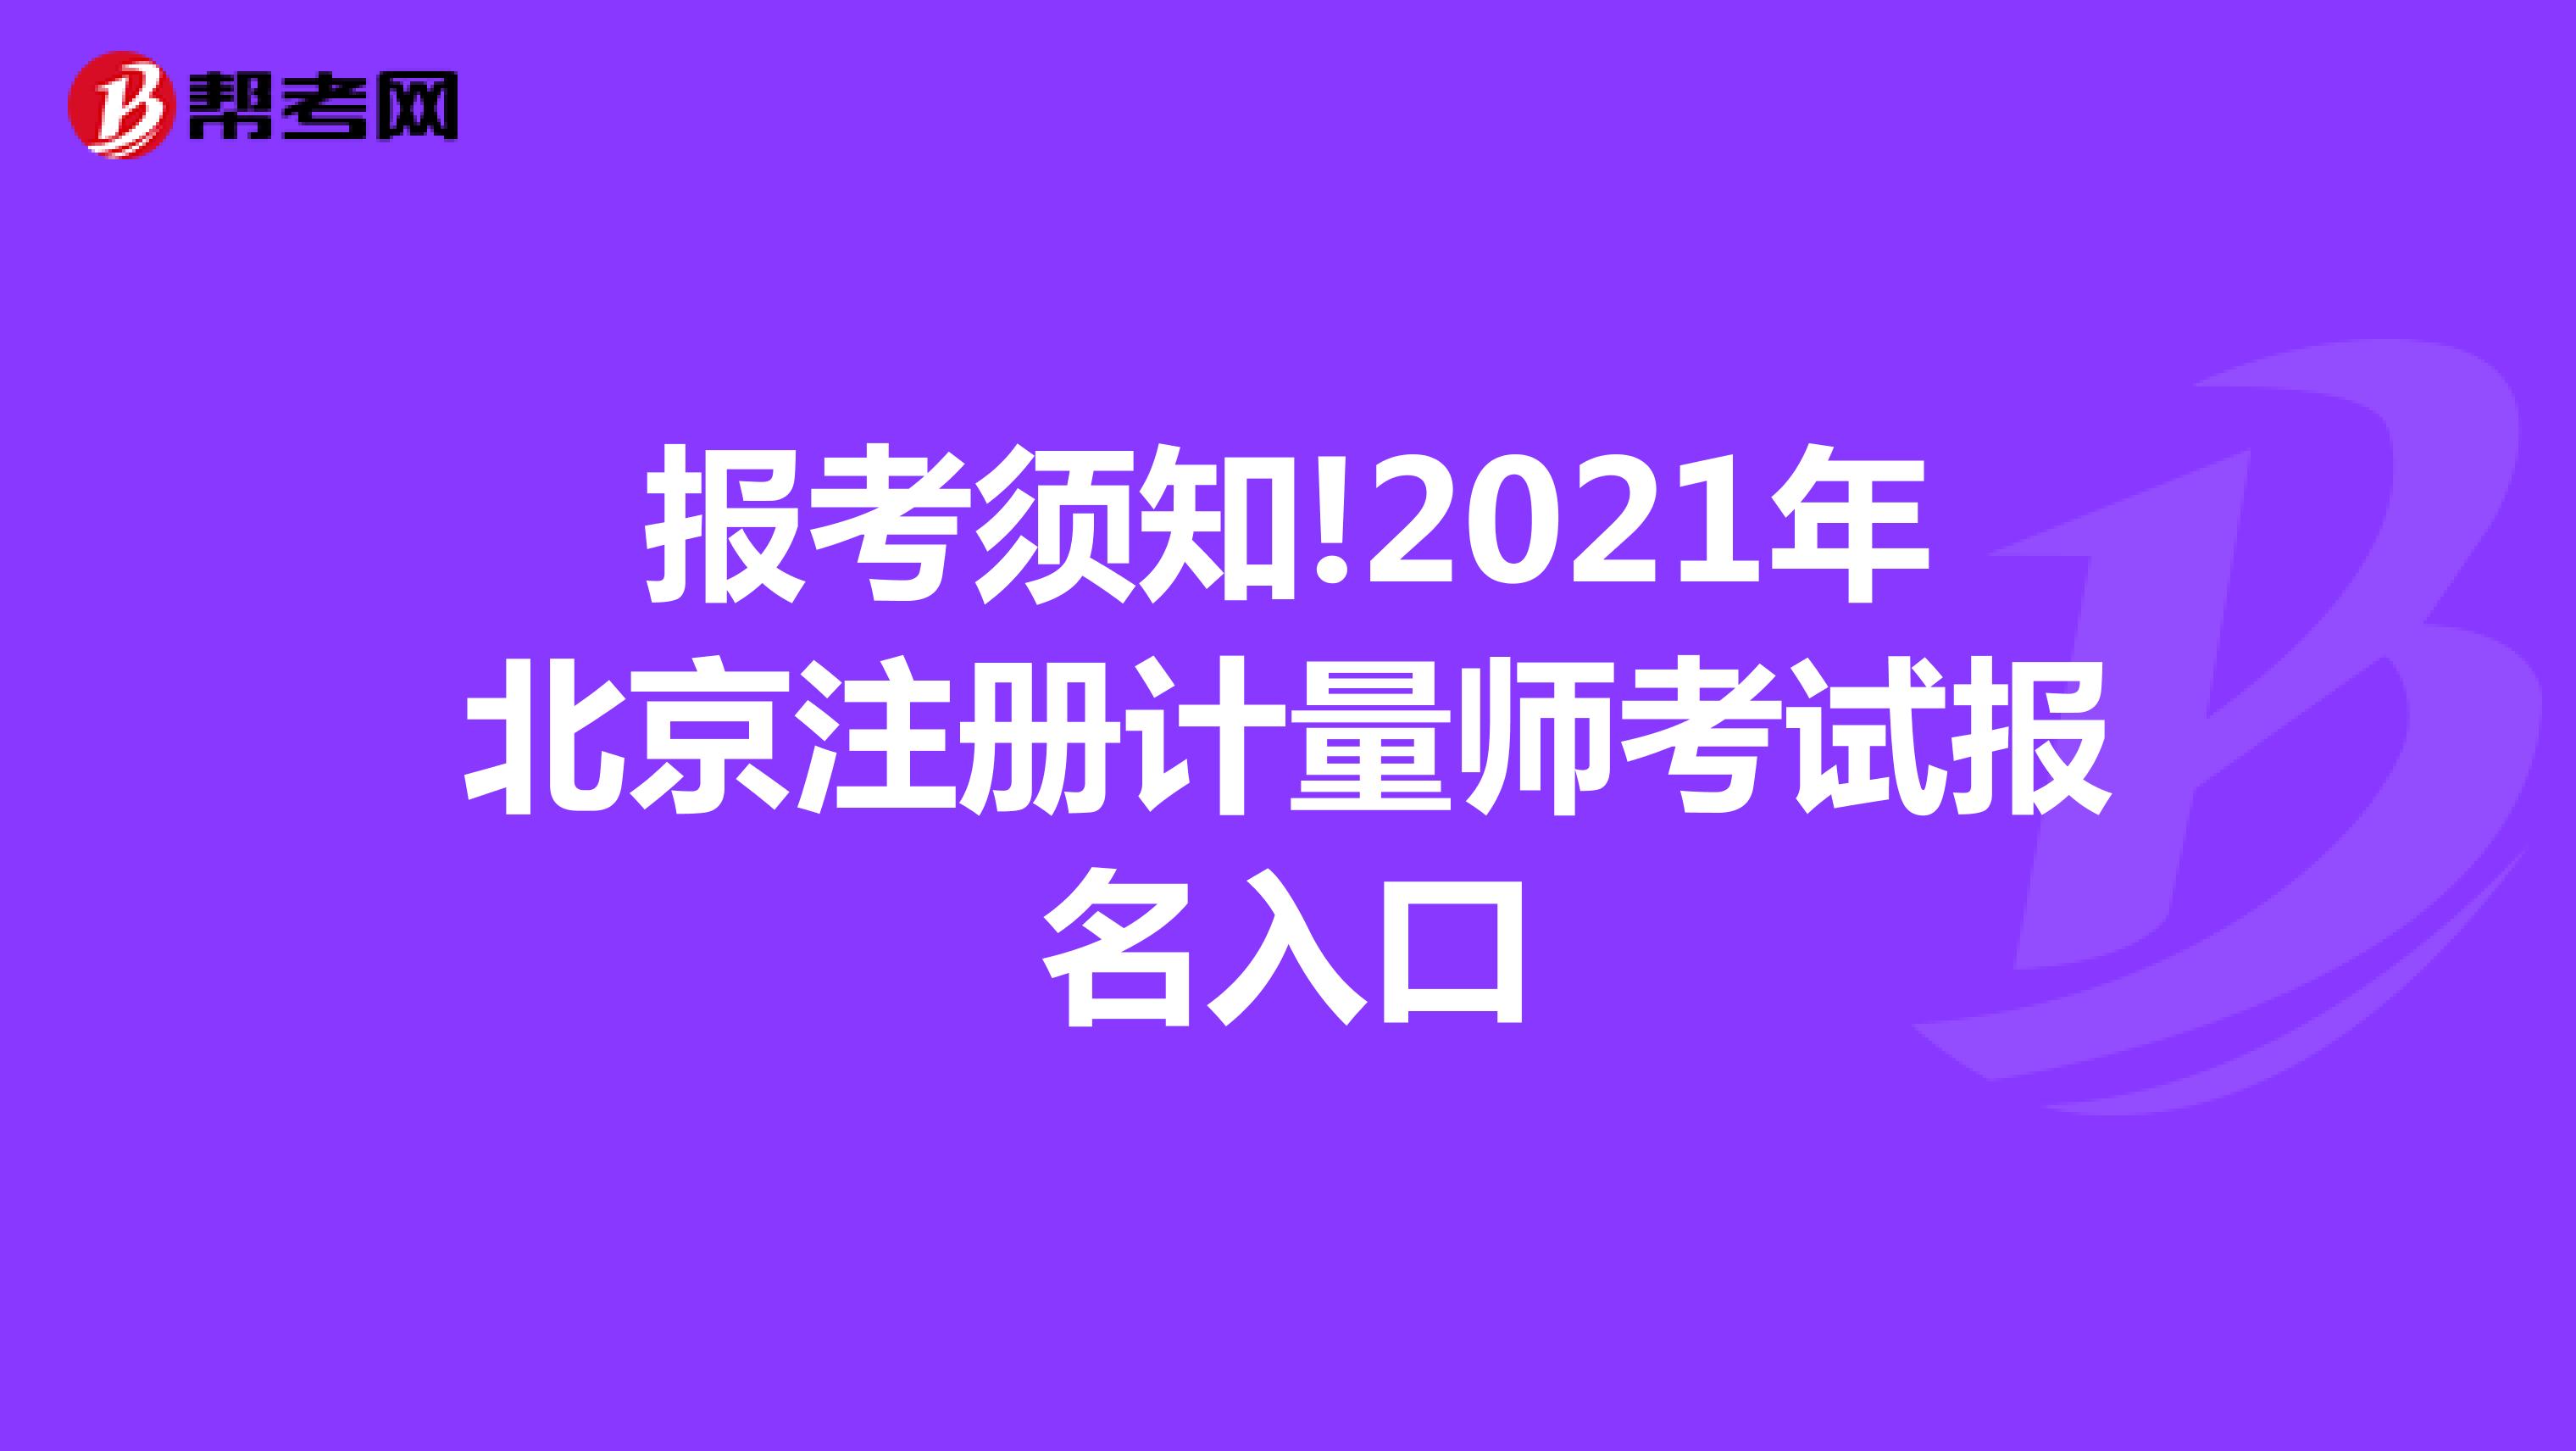 报考须知!2021年北京注册计量师考试报名入口